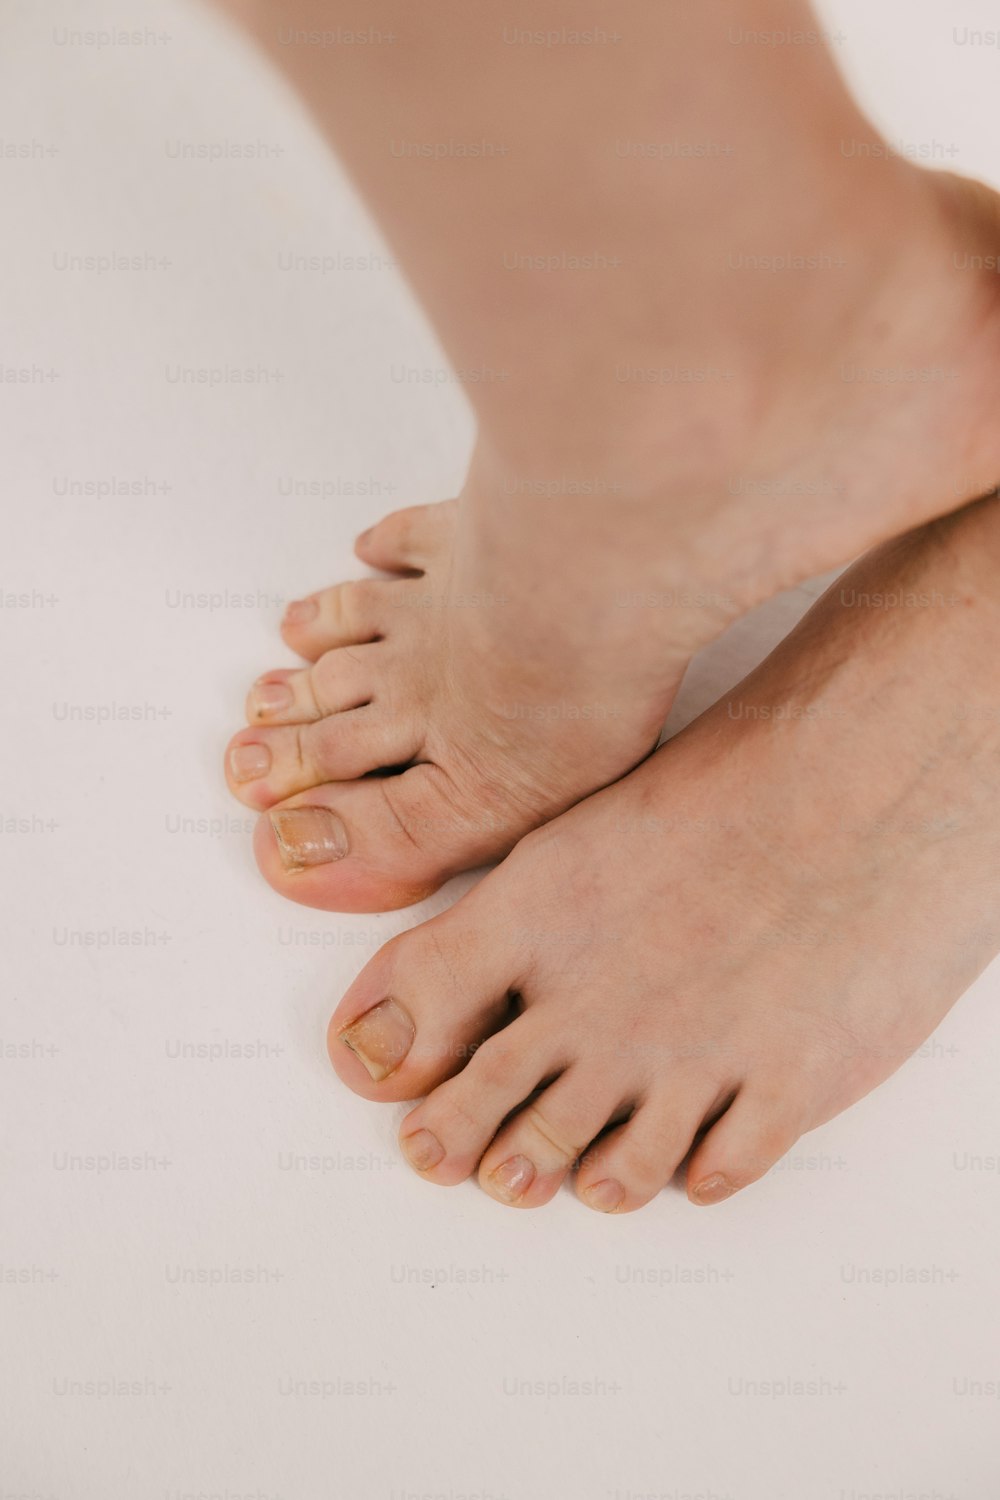 Un primer plano de los pies descalzos de una persona sobre una superficie blanca